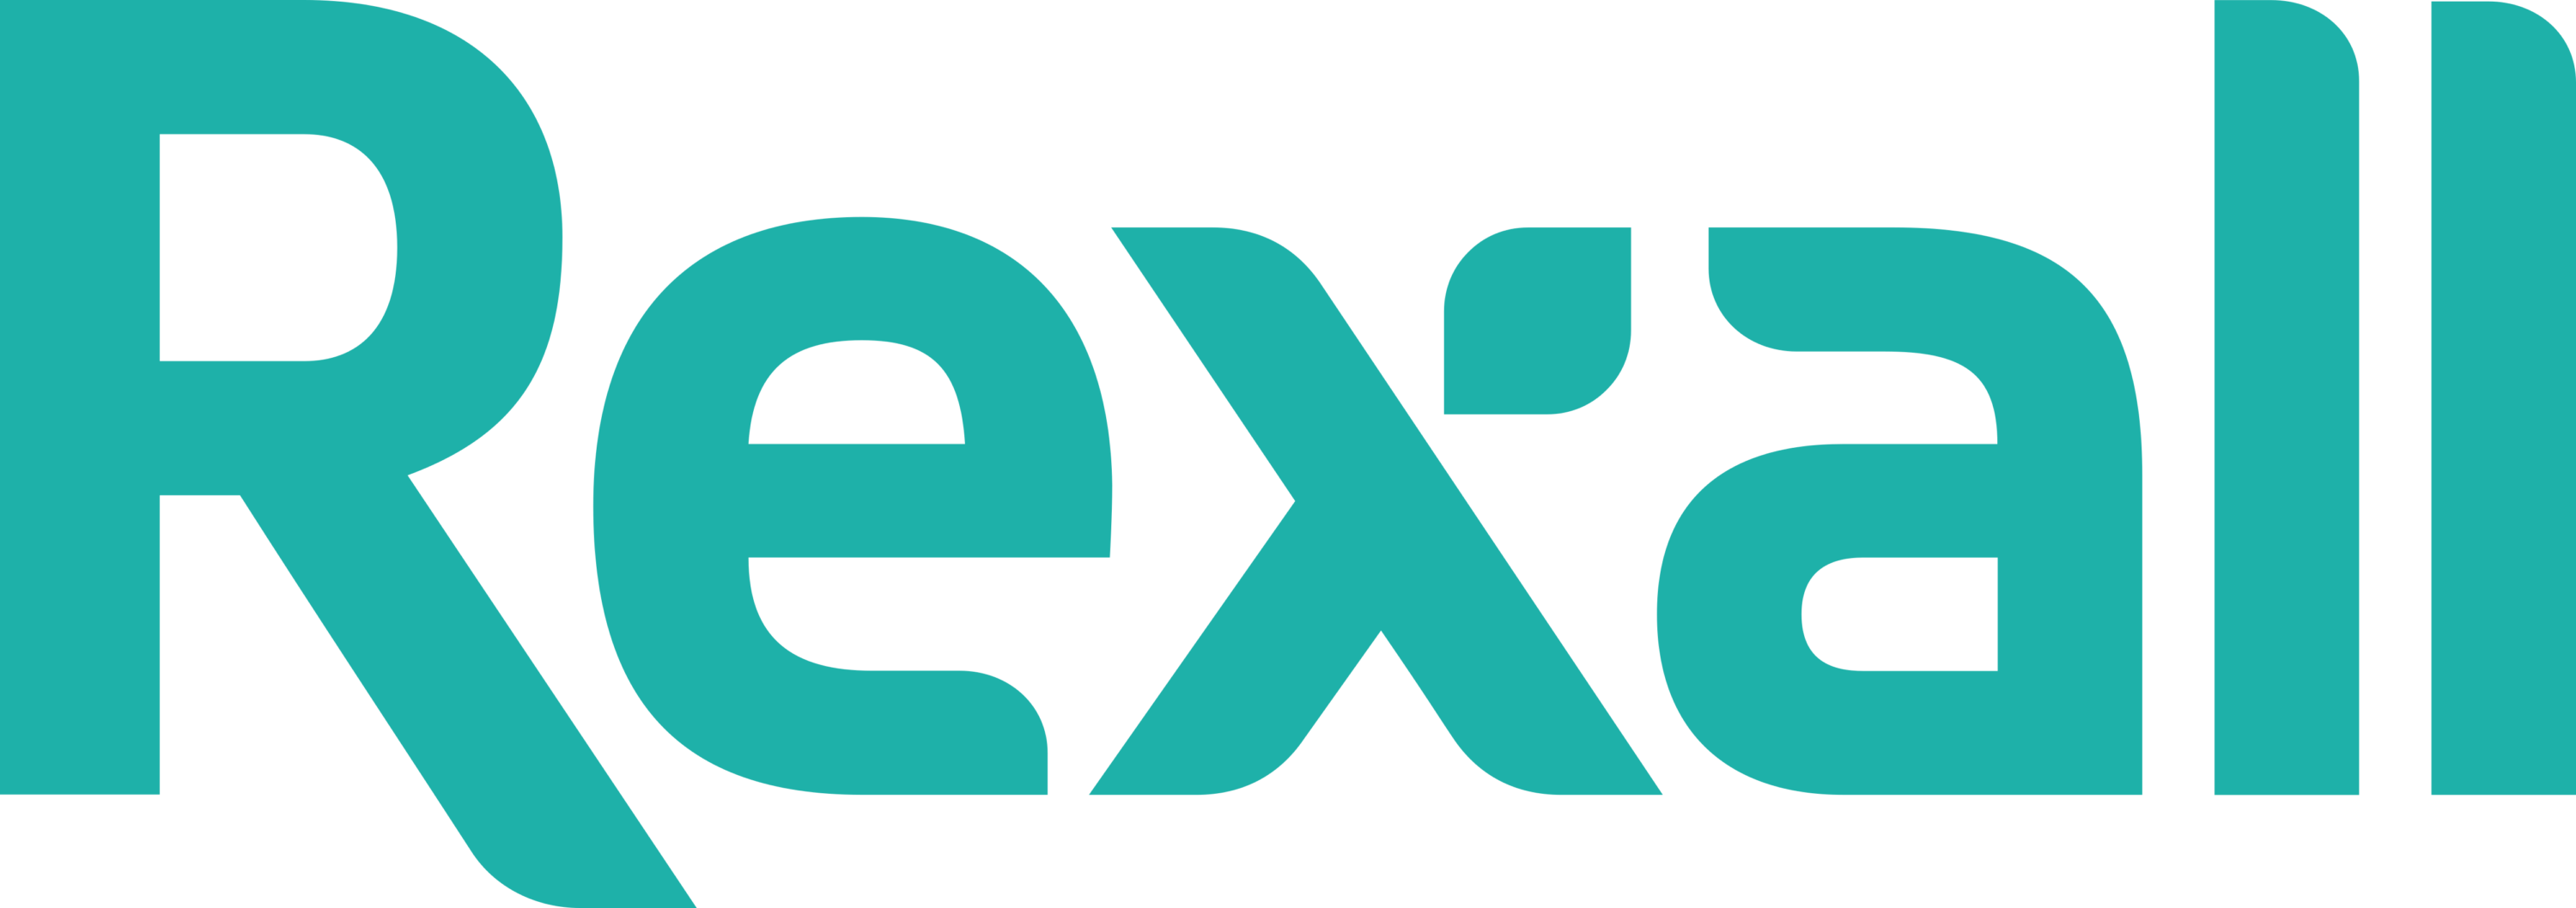 Rexall (Canada) Logo 2013